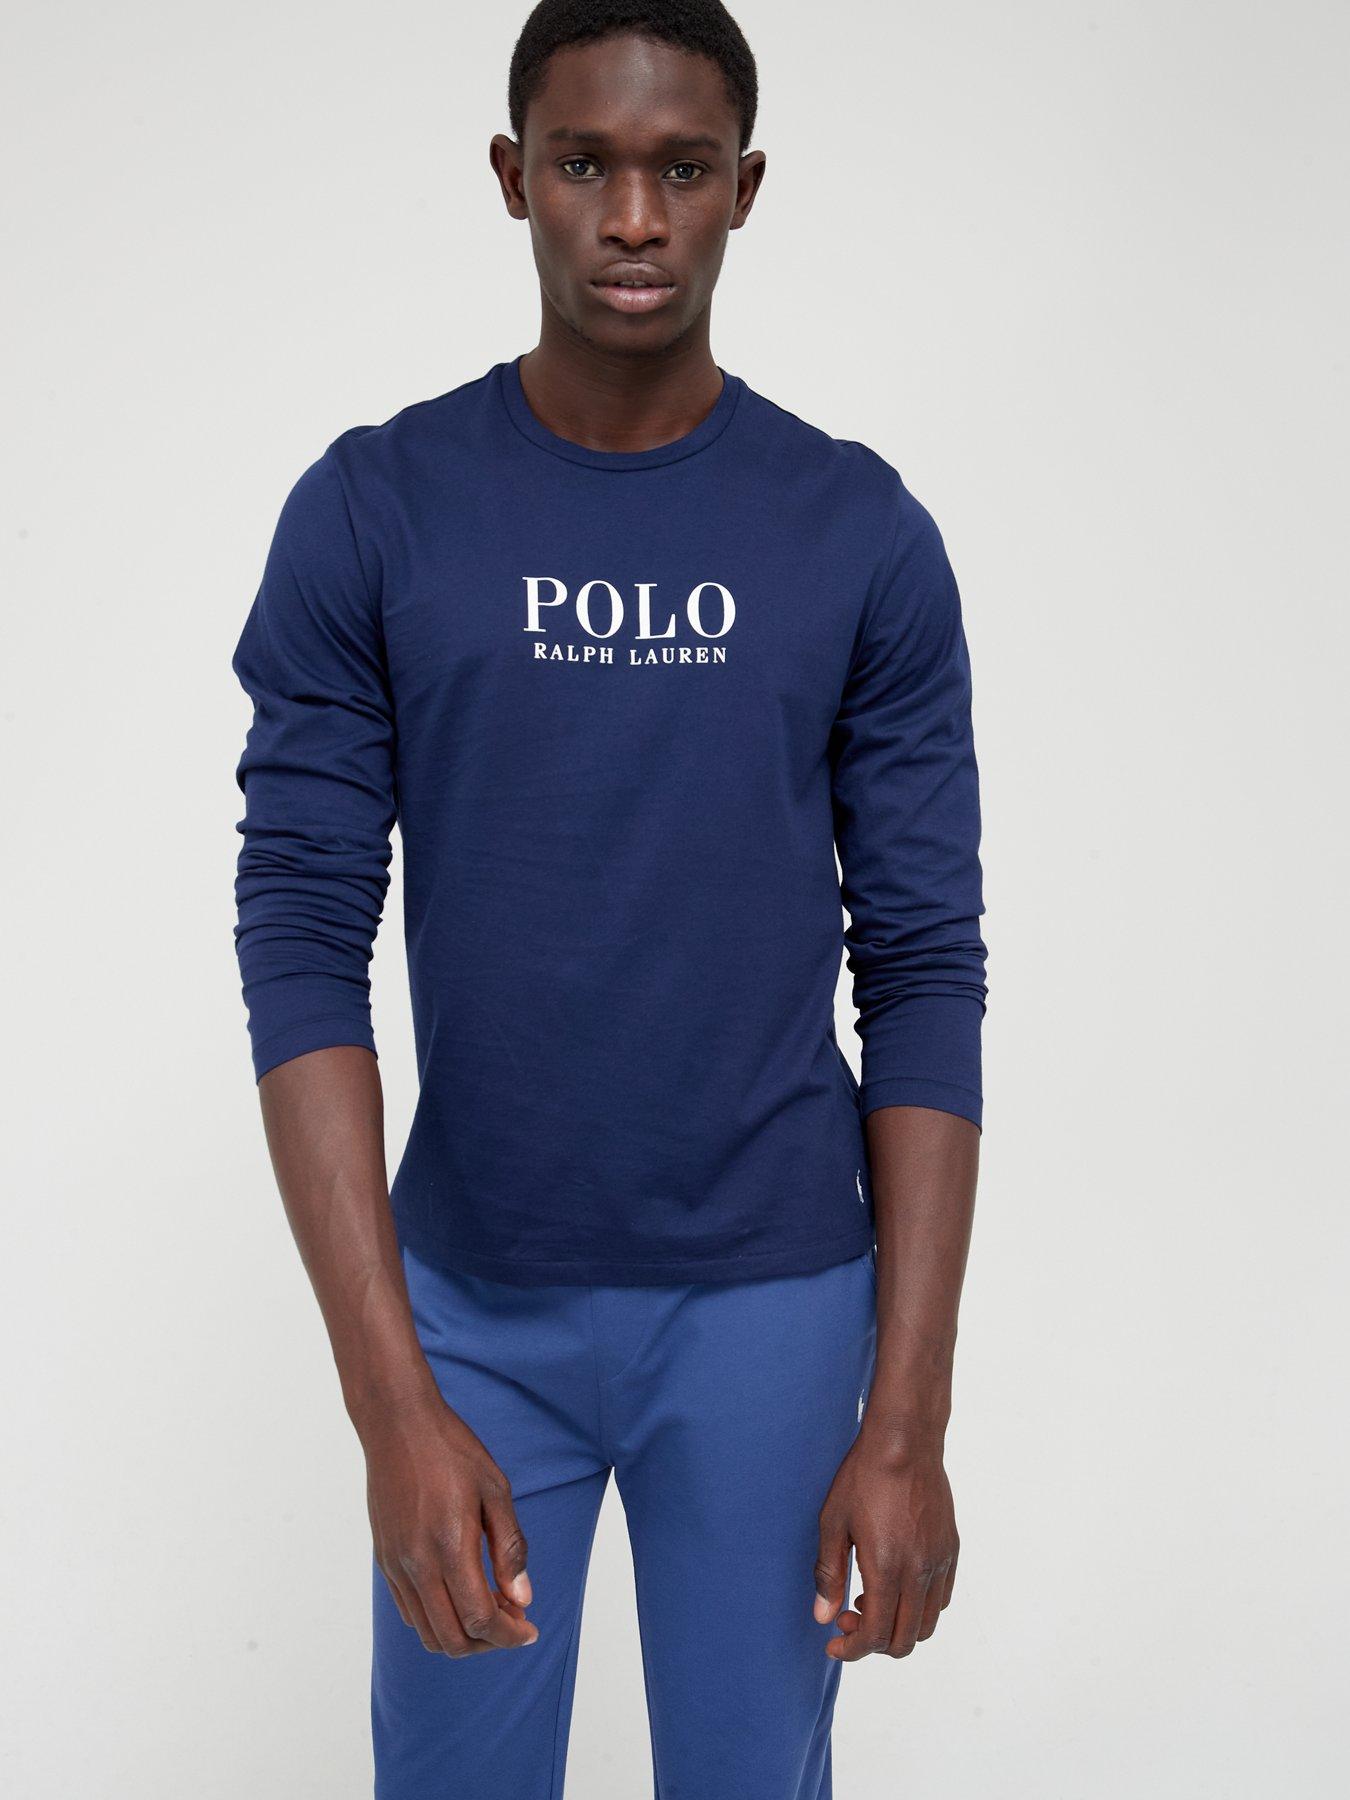 Polo ralph lauren | Nightwear & loungewear | Men | Very Ireland